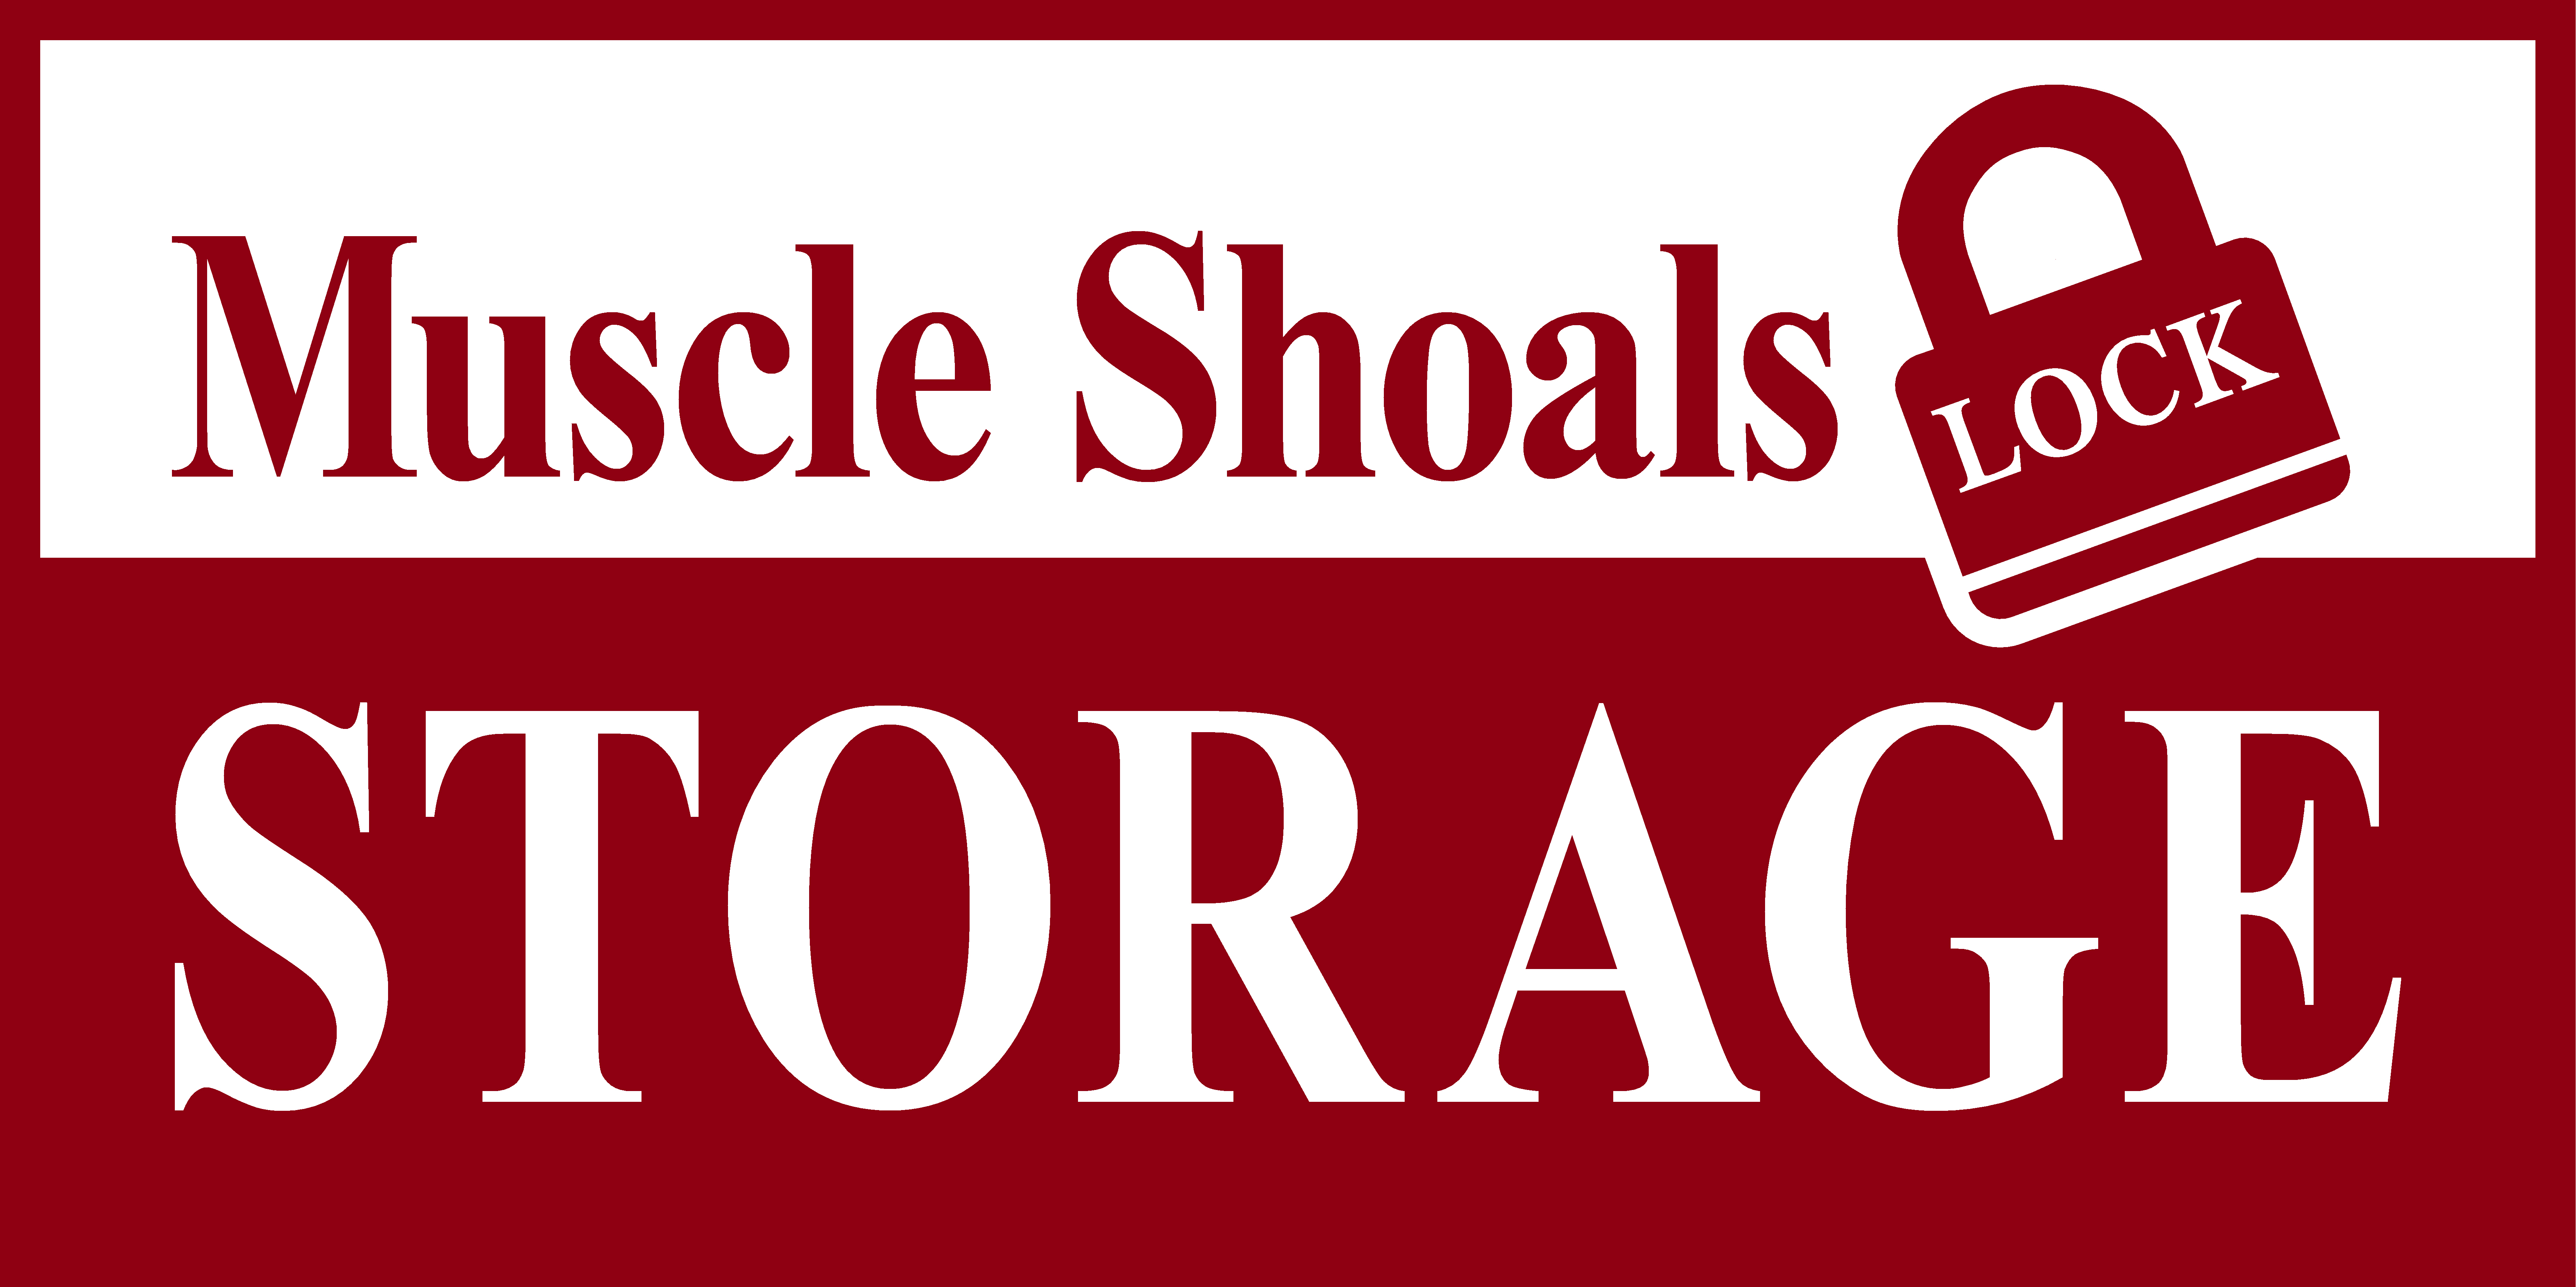 Muscle Shoals Lock Storage in Muscle Shoals, AL